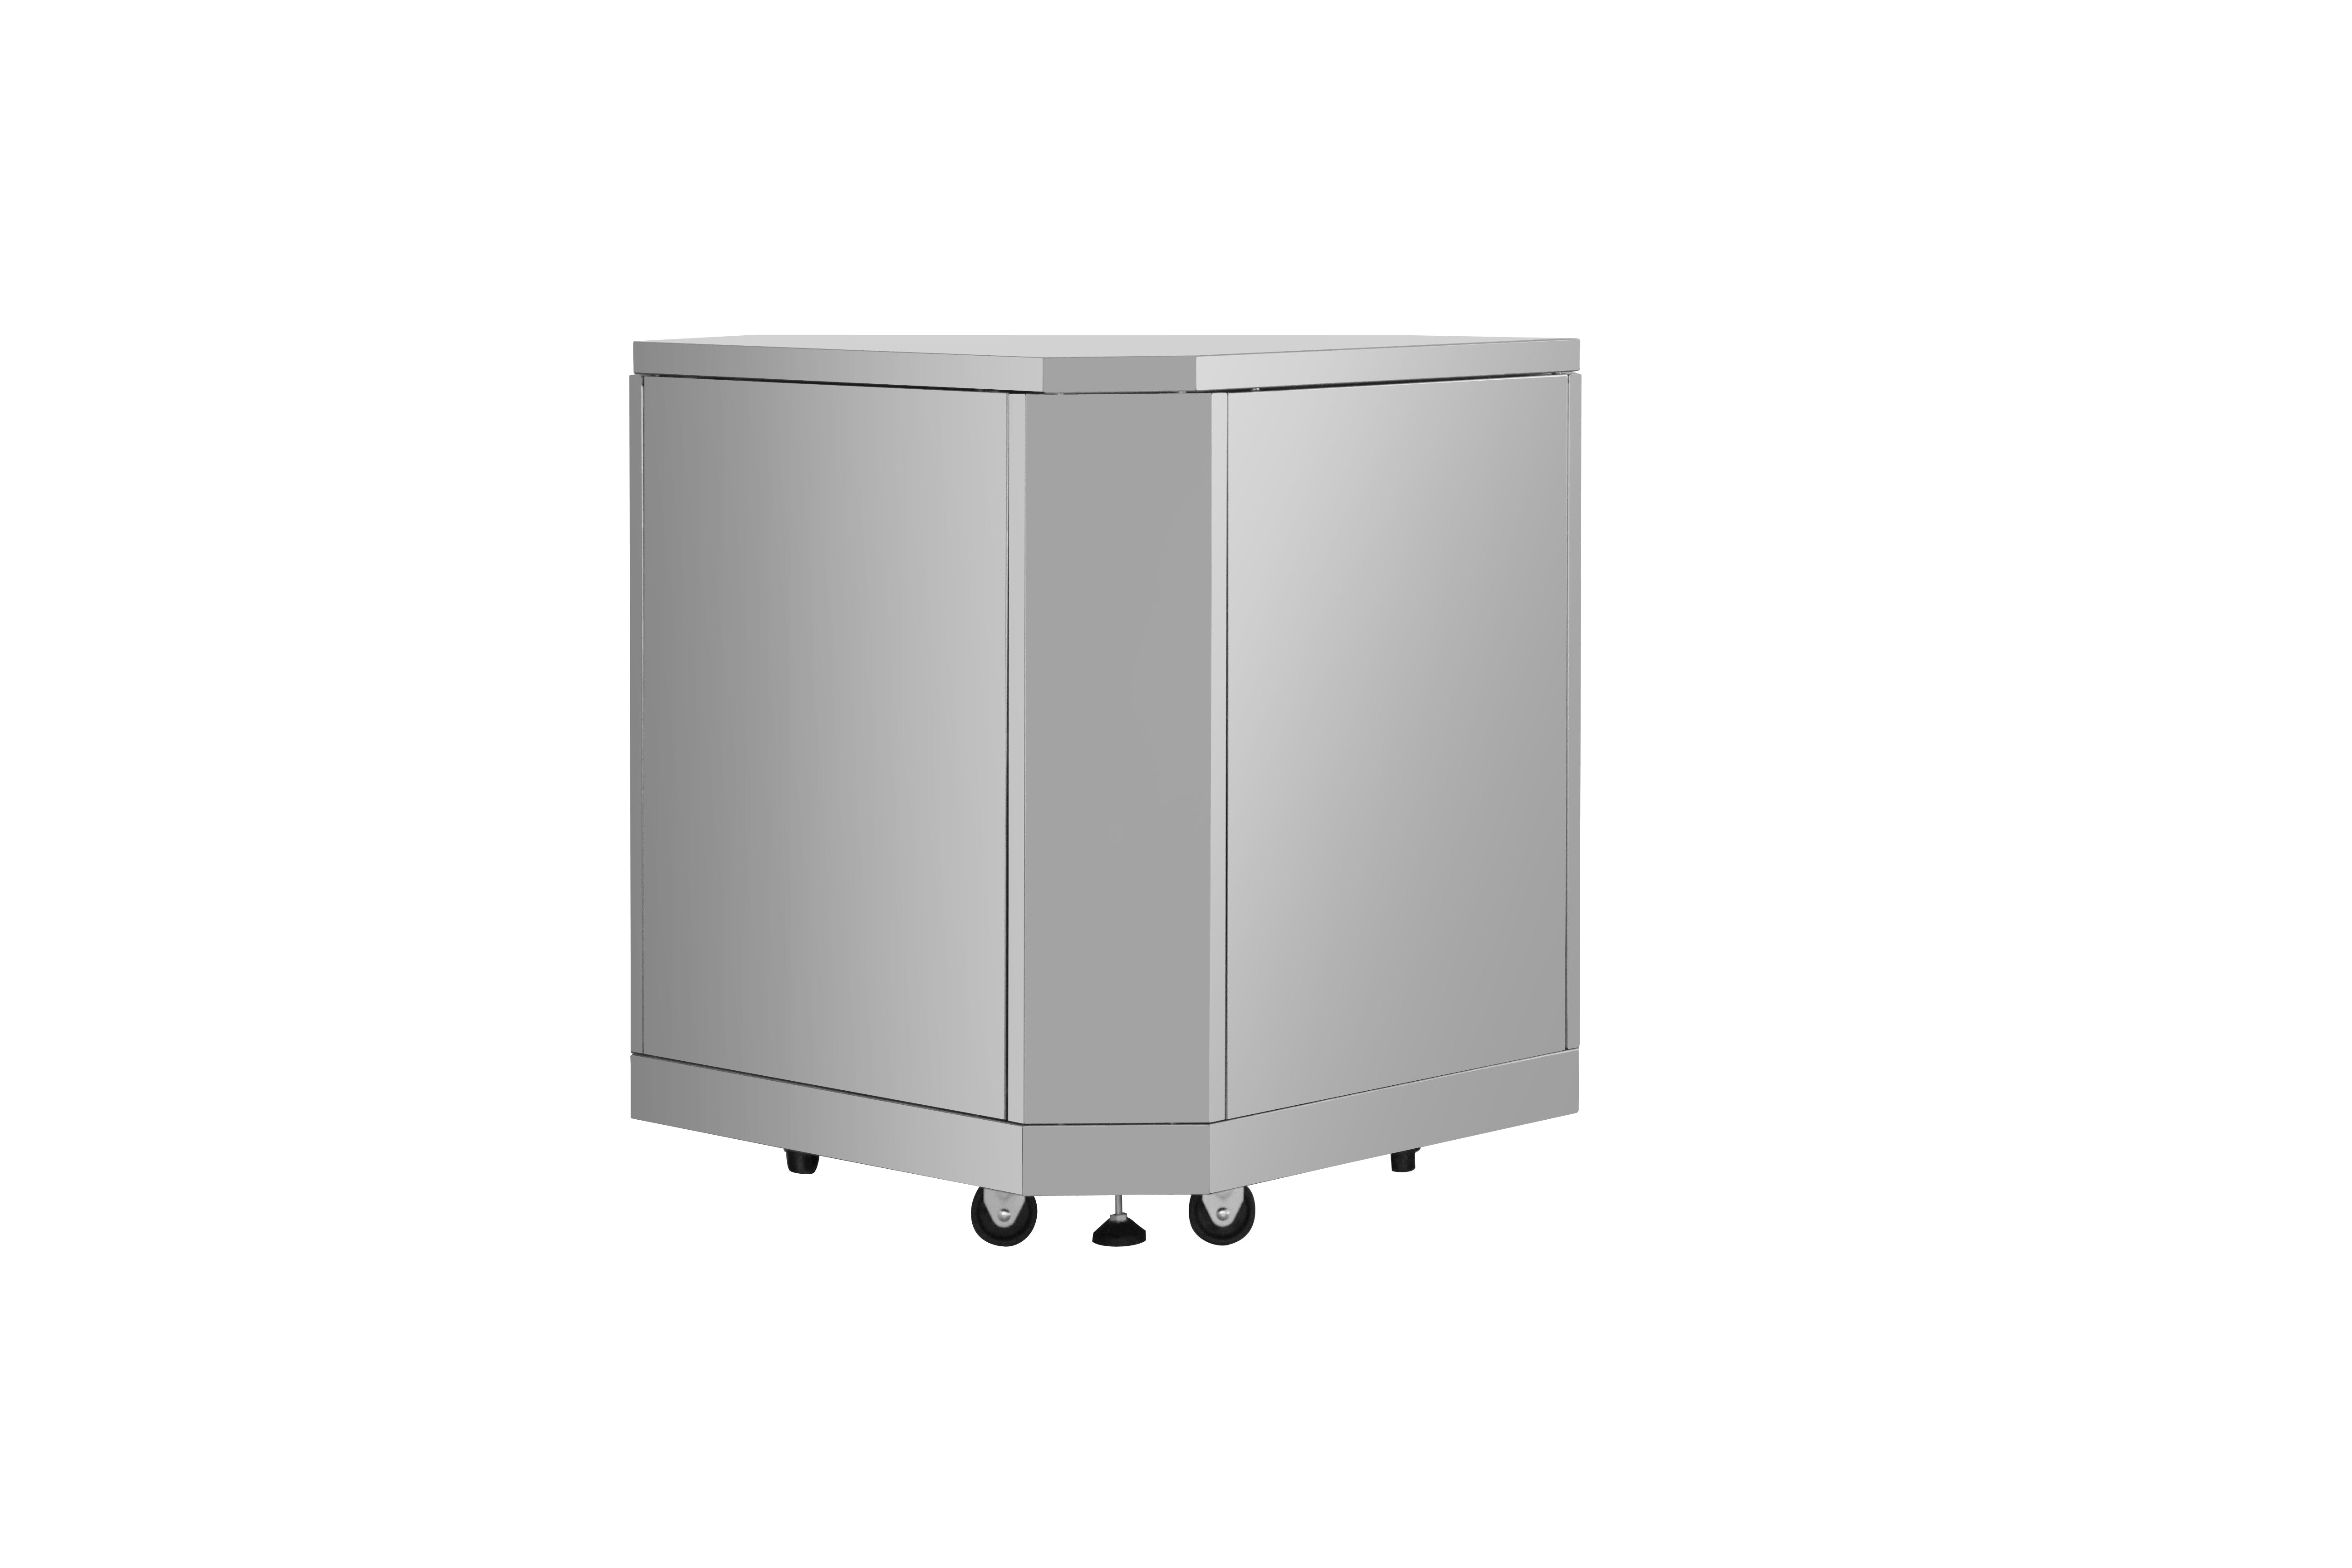 Thor Kitchen Outdoor Kitchen Corner Cabinet Module in Stainless Steel MK06SS304 Outdoor Appliances MK06SS304 Luxury Appliances Direct